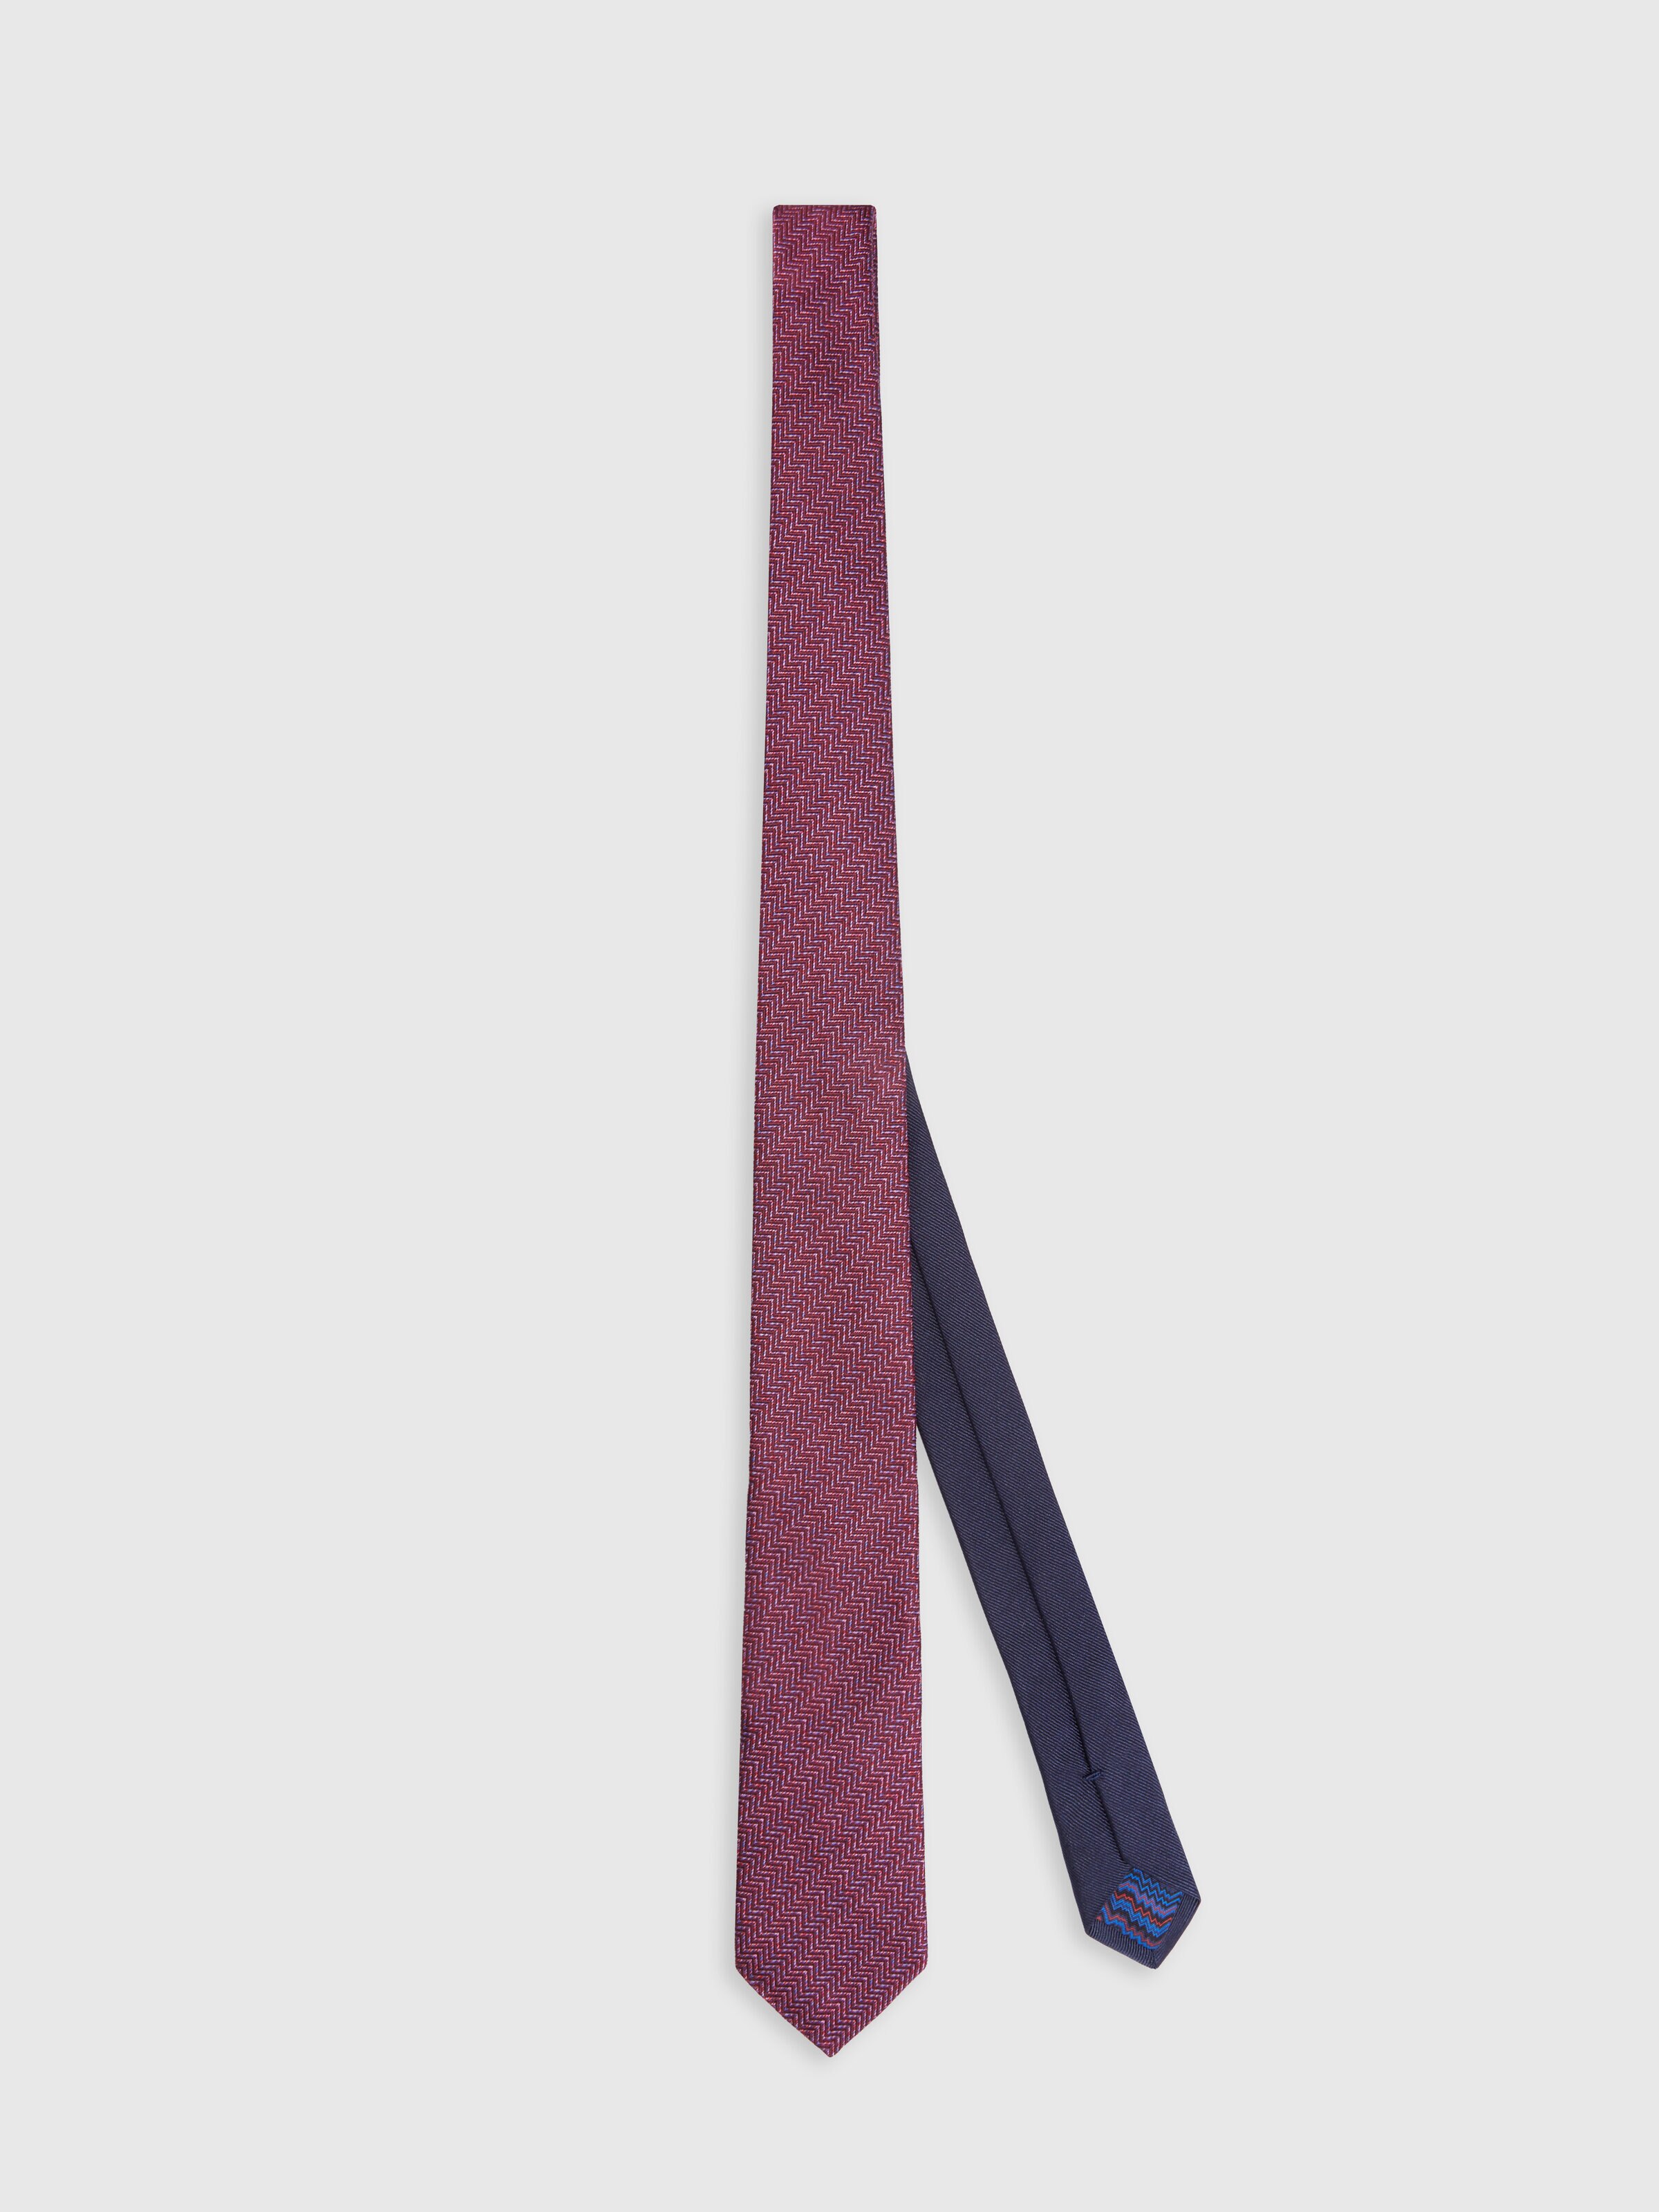 Cravatta in seta chevron, Multicolore  - 0